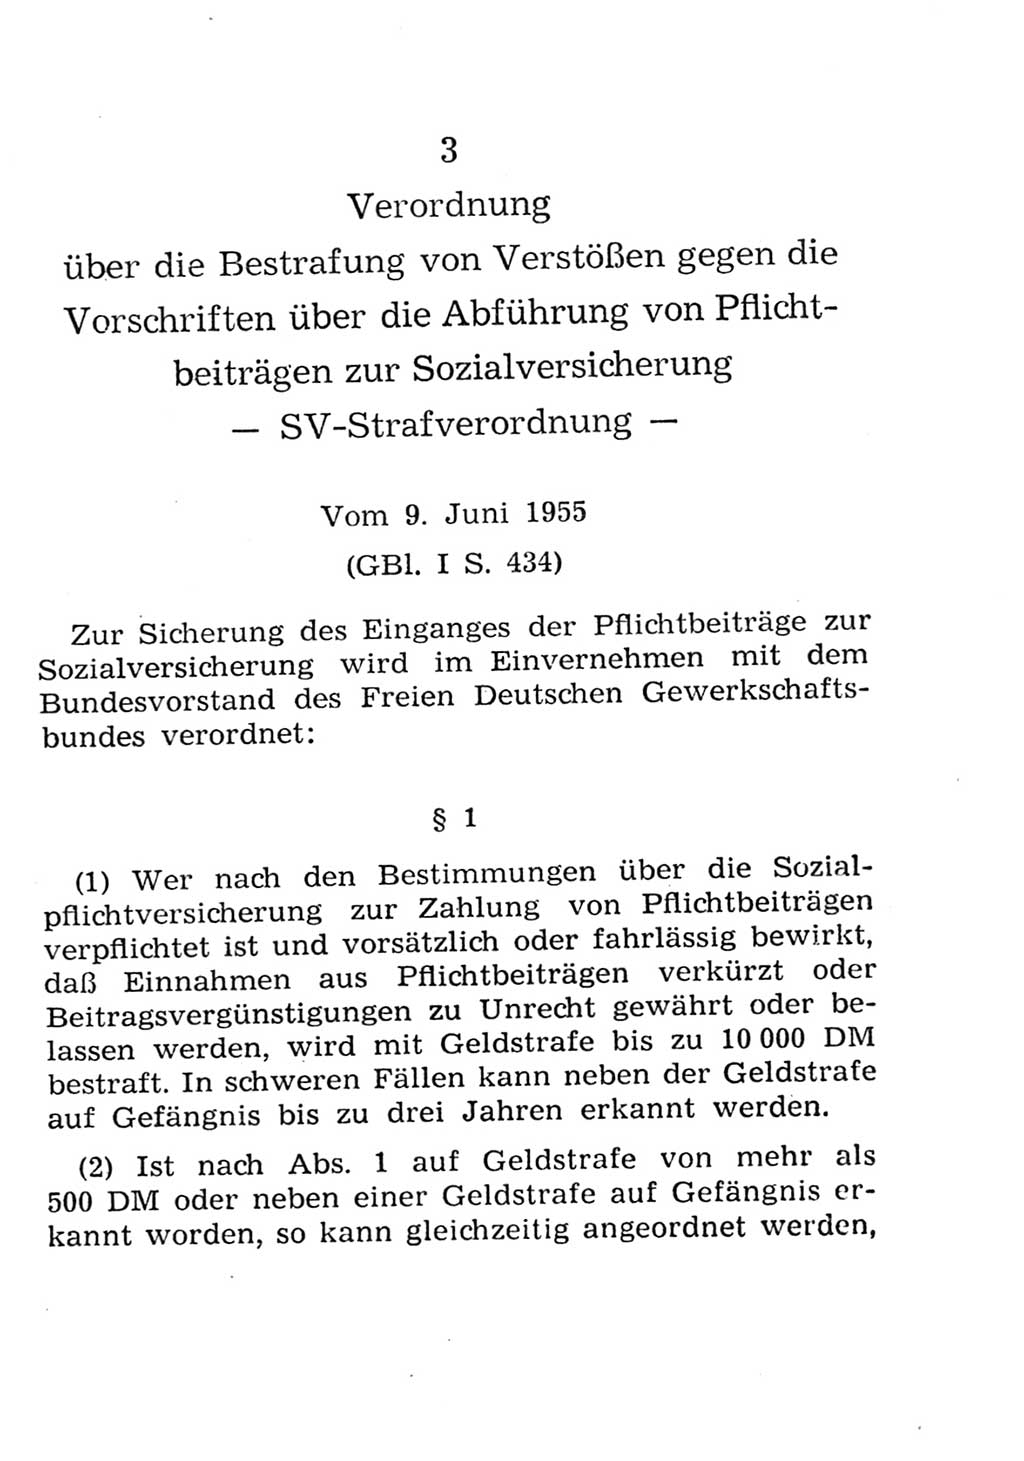 Strafgesetzbuch (StGB) und andere Strafgesetze [Deutsche Demokratische Republik (DDR)] 1957, Seite 343 (StGB Strafges. DDR 1957, S. 343)